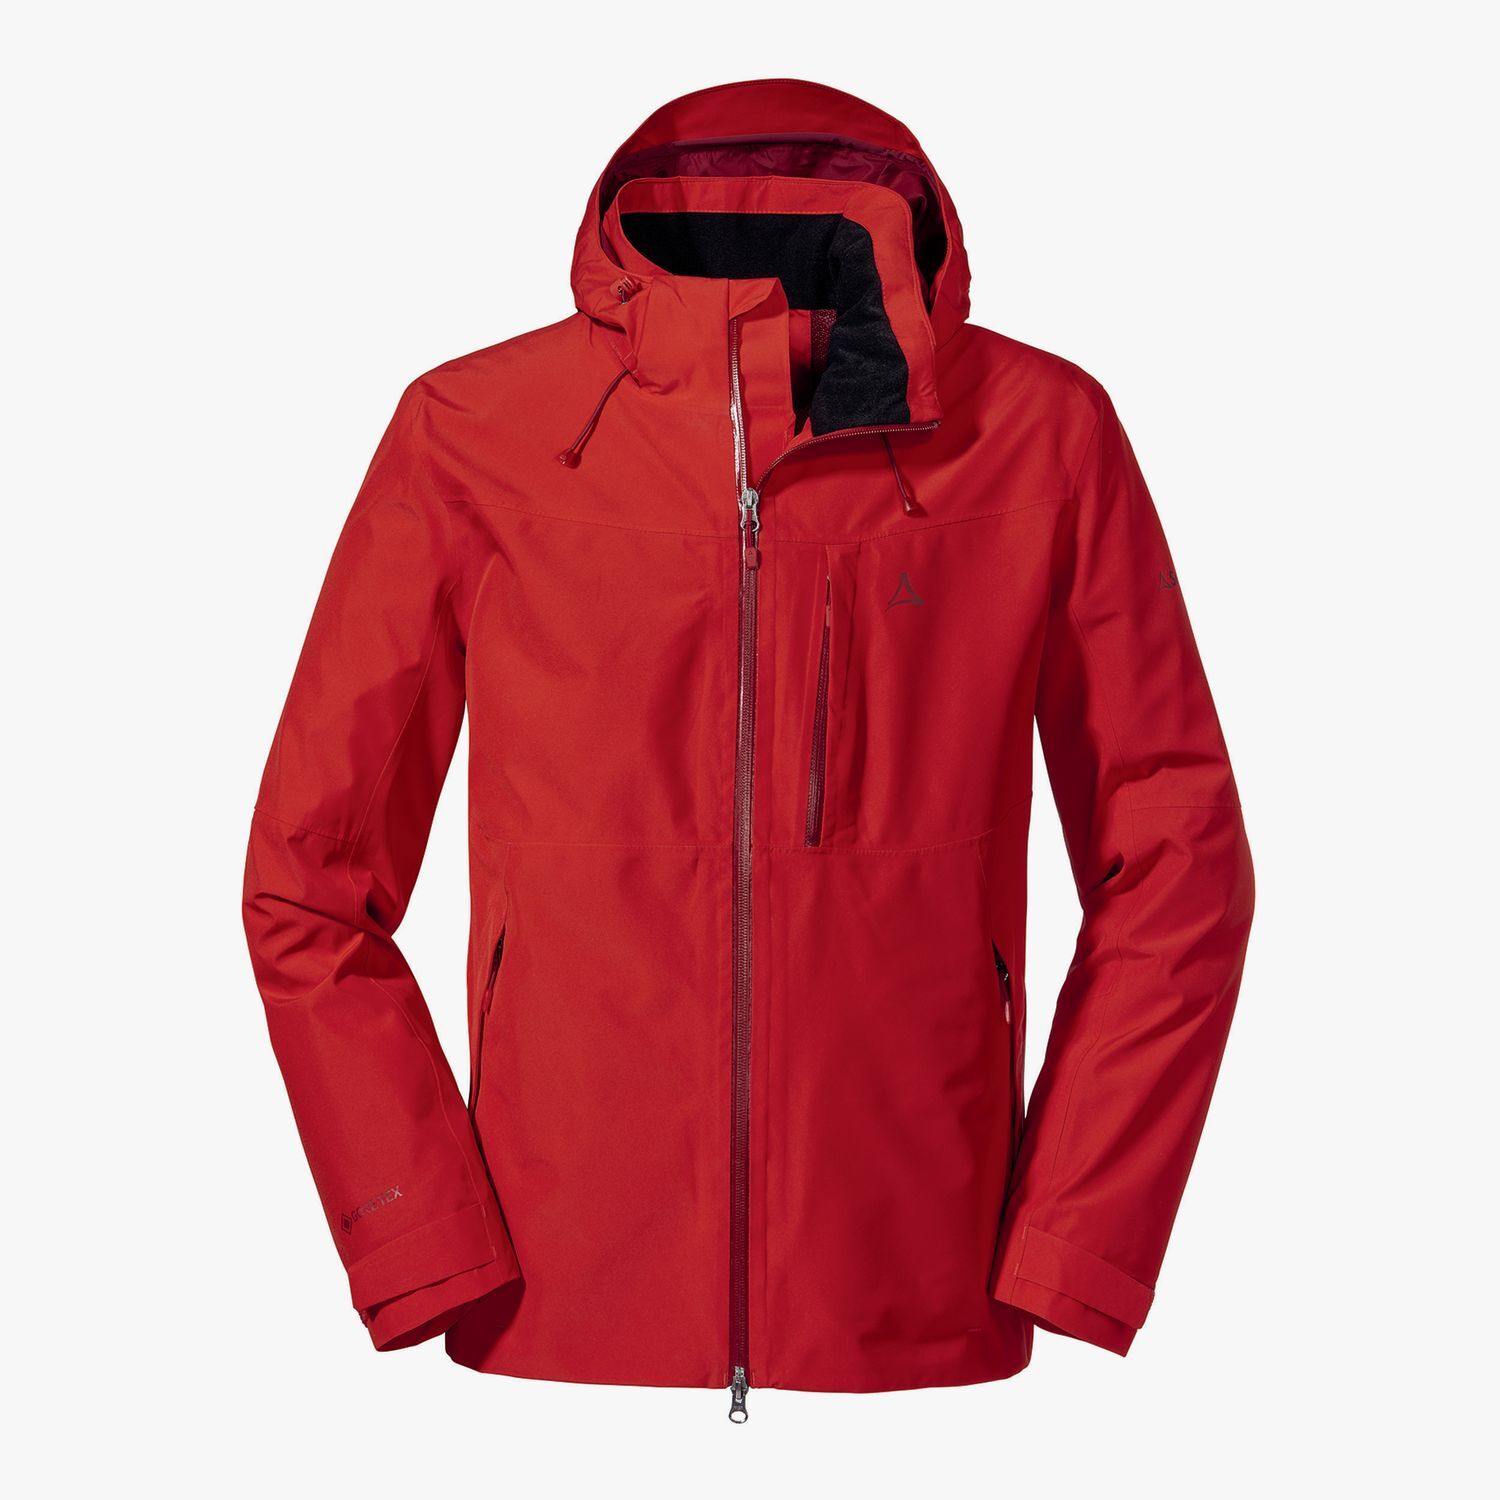 Schöffel Jacket Padon - Waterproof jacket - Men's